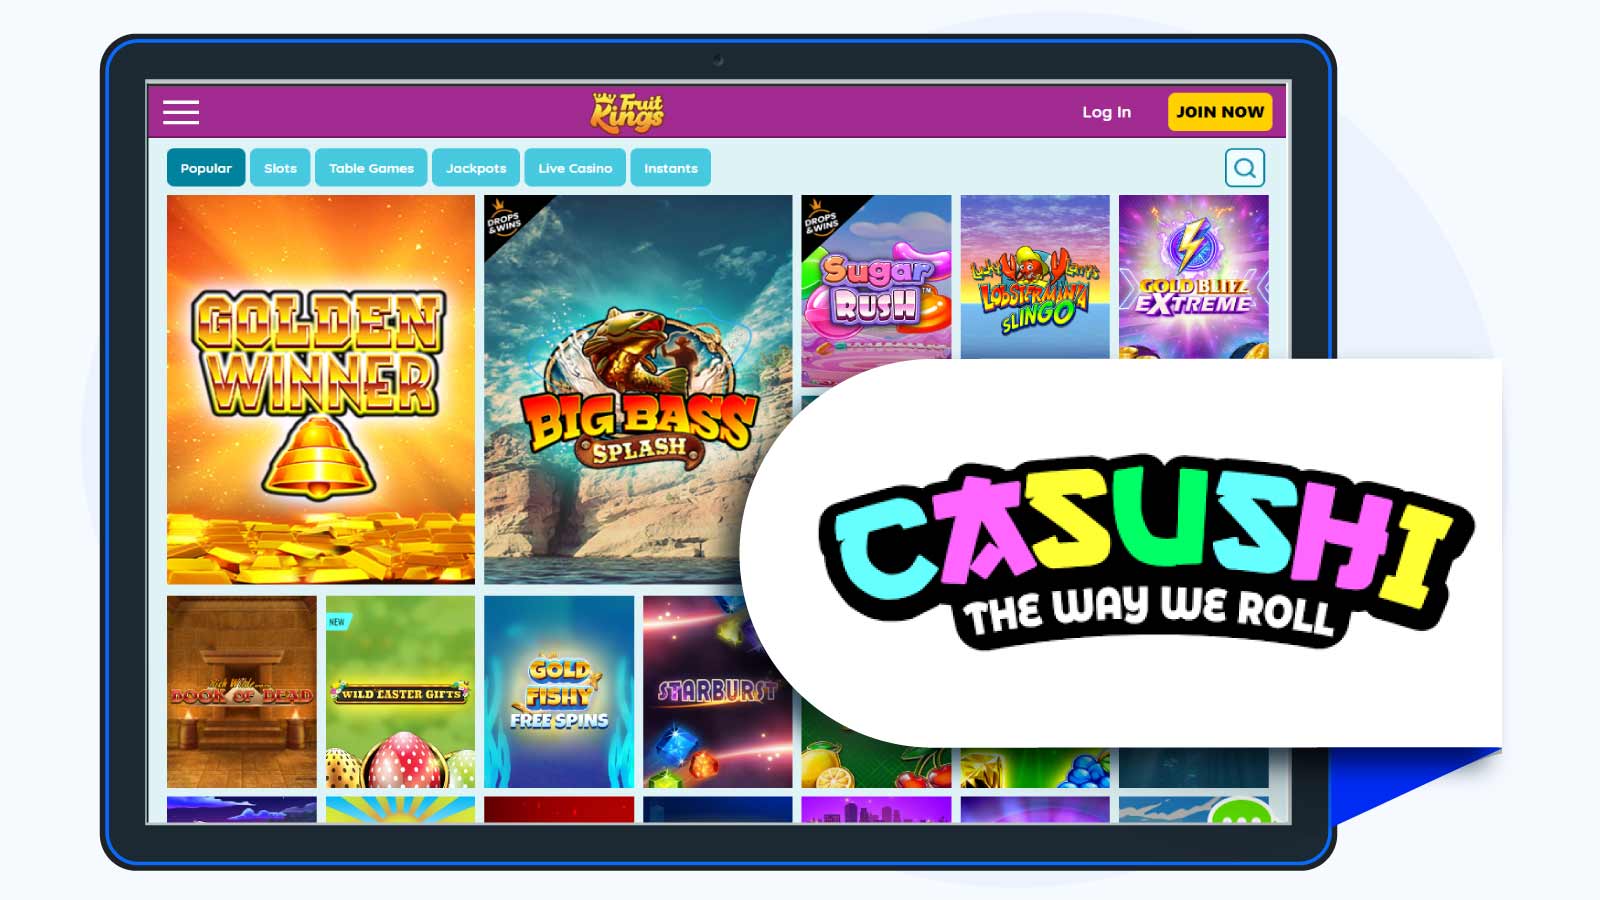 Casushi Casino 100% up to £50 + 50 Free Spins Best Runner-up Casino Bonus UK